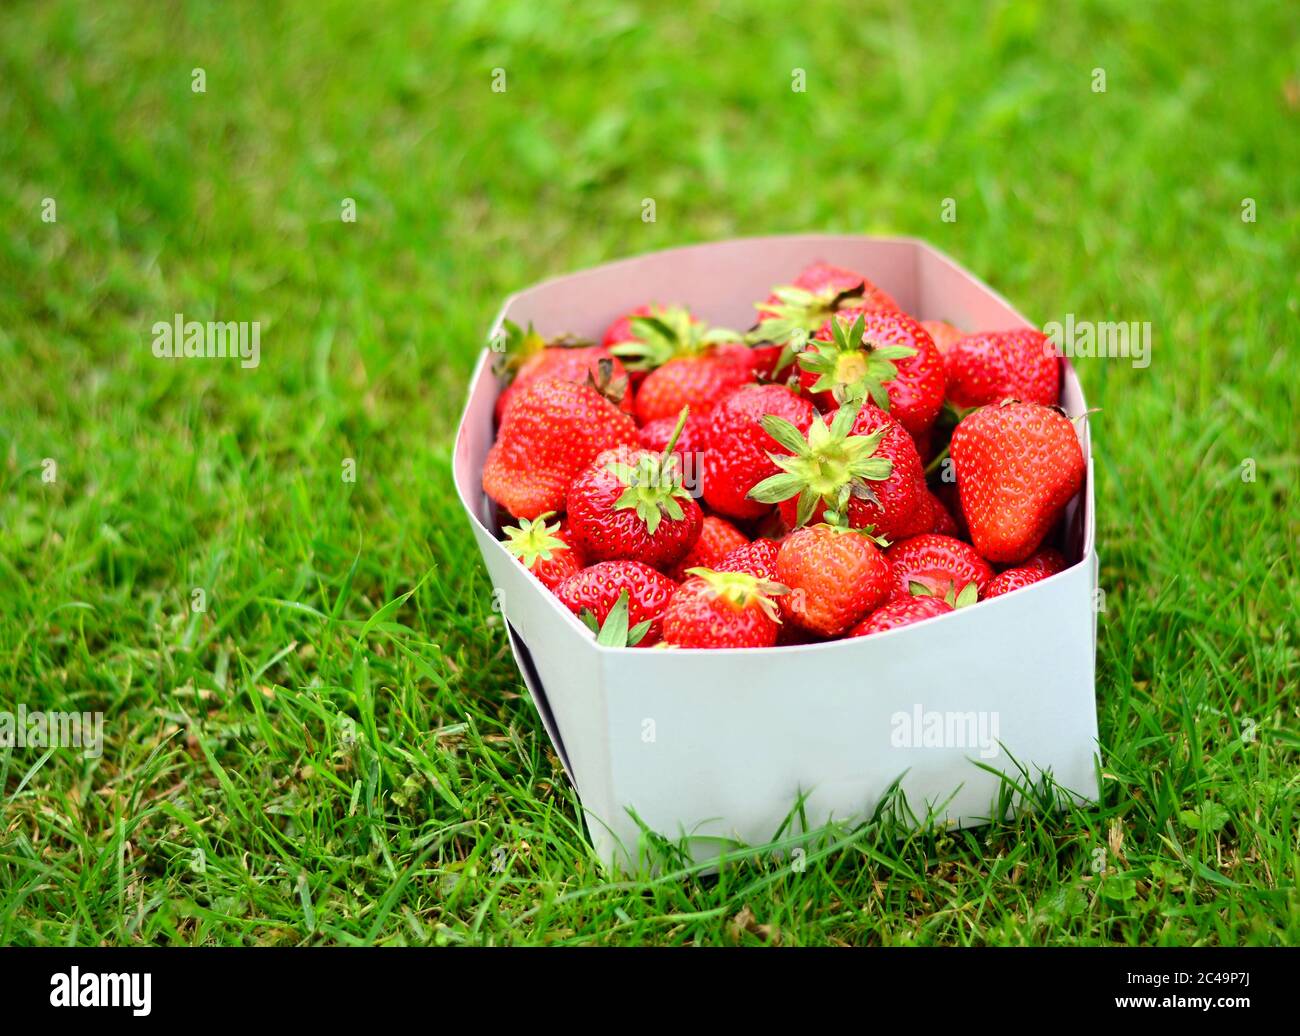 Boîte de feuilles blanches de fraises entières fraîches, posées dans l'herbe verte. Banque D'Images